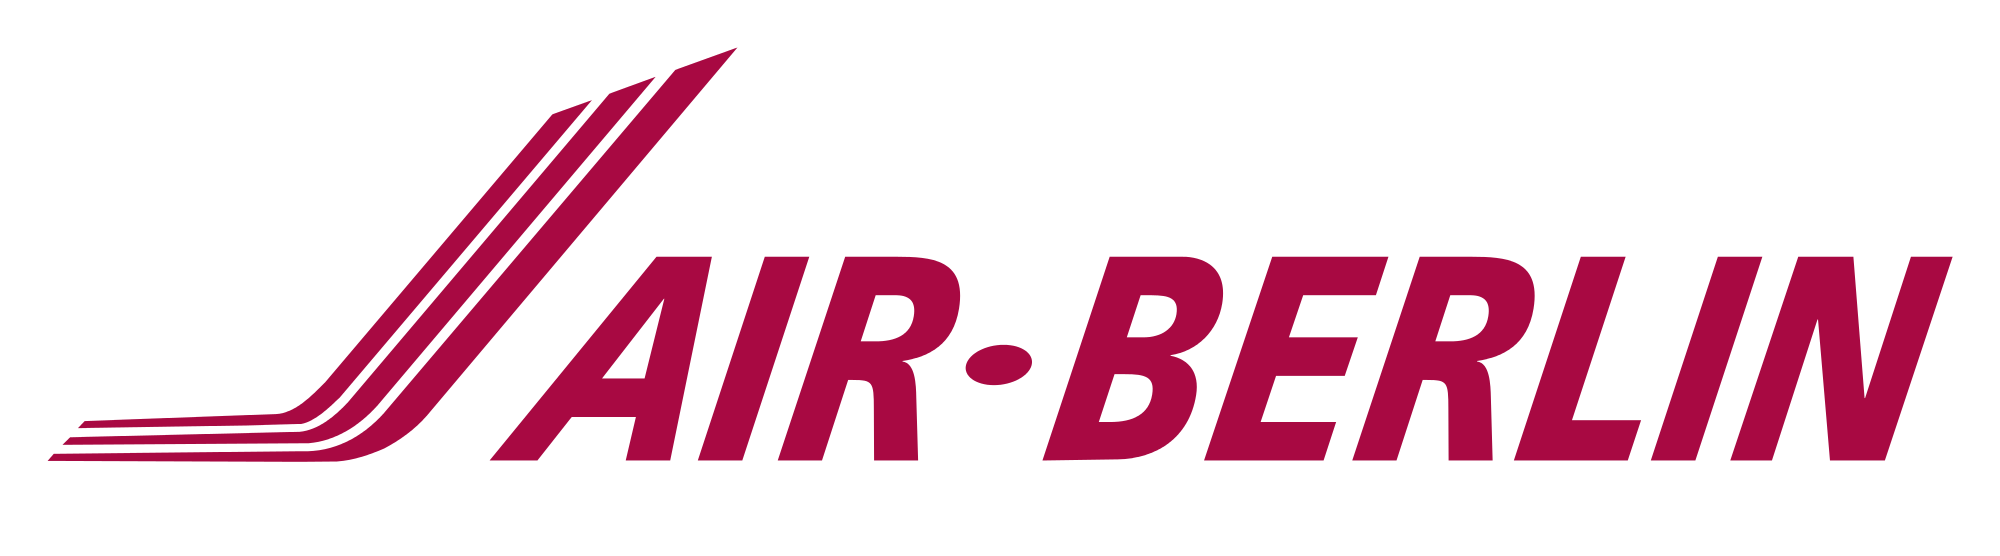 Wings Air logo vector downloa